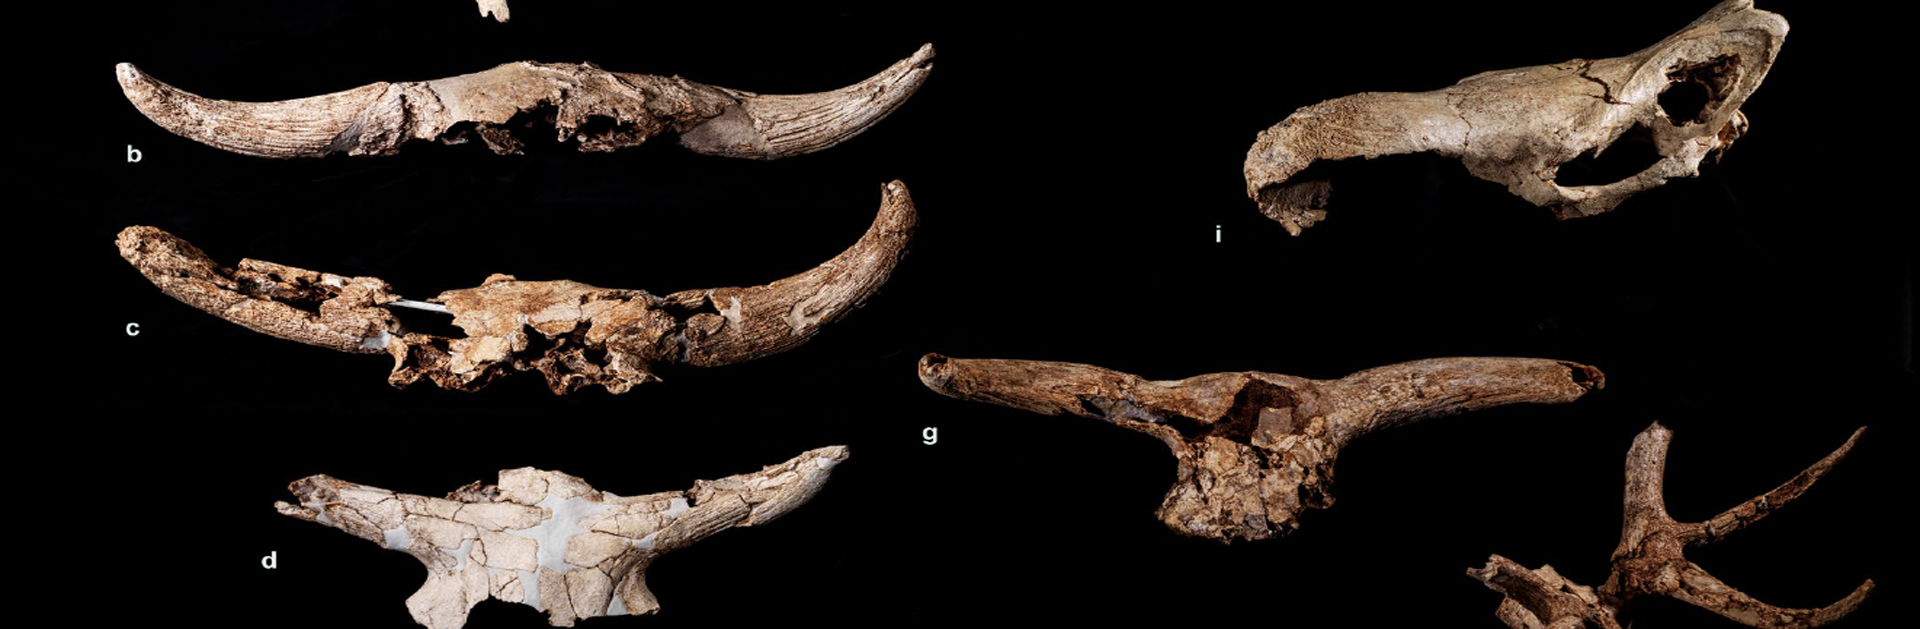 Un santuario de caza en Pinilla del Valle confirma que los Neandertales tenían capacidad simbólica